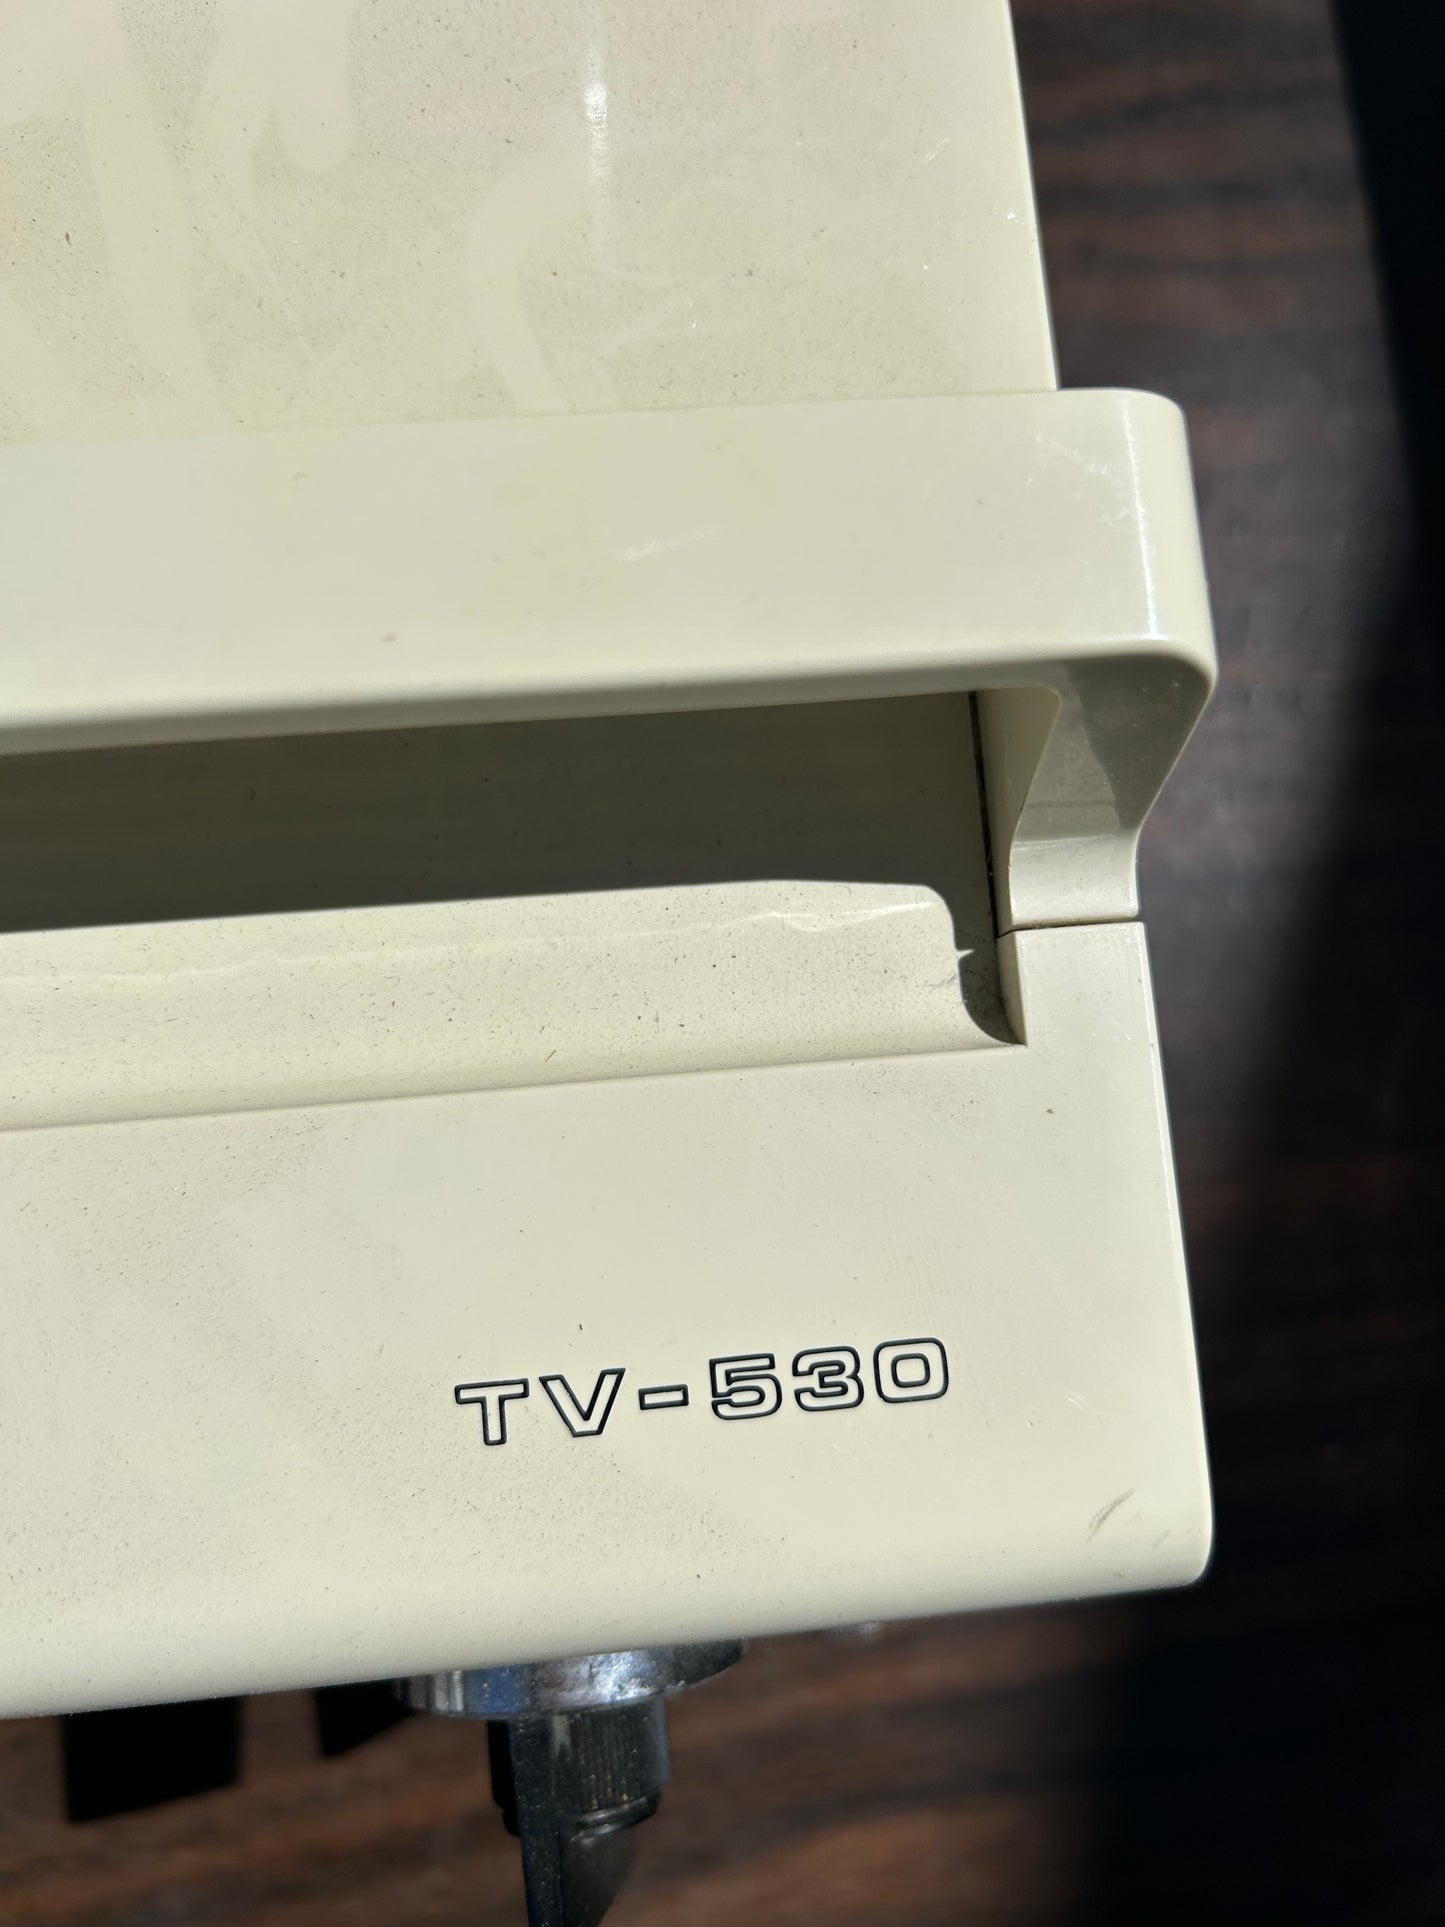 Vintage Sony Transistor TV Receiver Model TV-530 Serial Number 106004